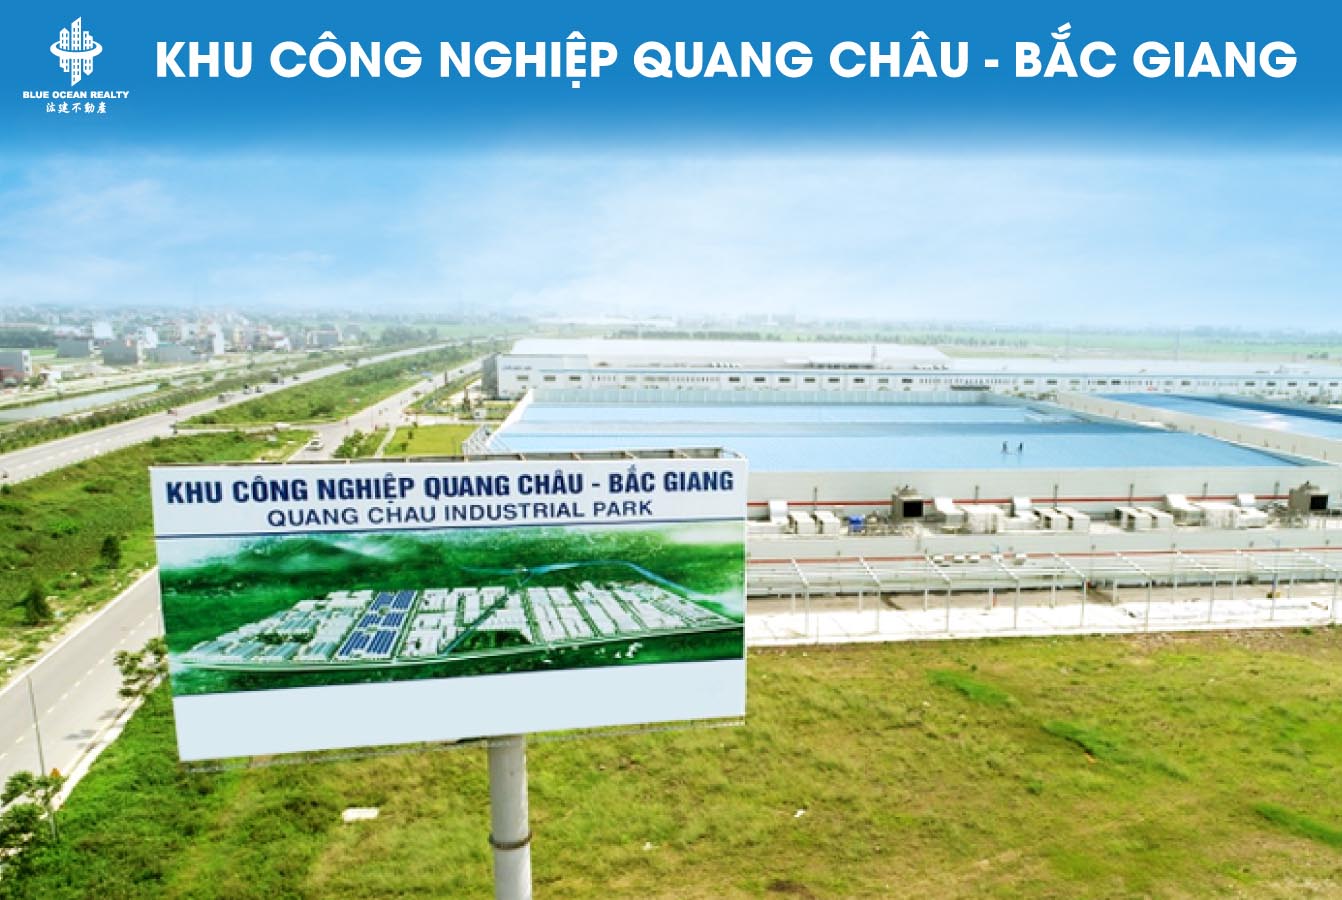 Bán và cho thuê xe nâng điện Heli tại khu công nghiệp Quang Châu - Bắc Giang